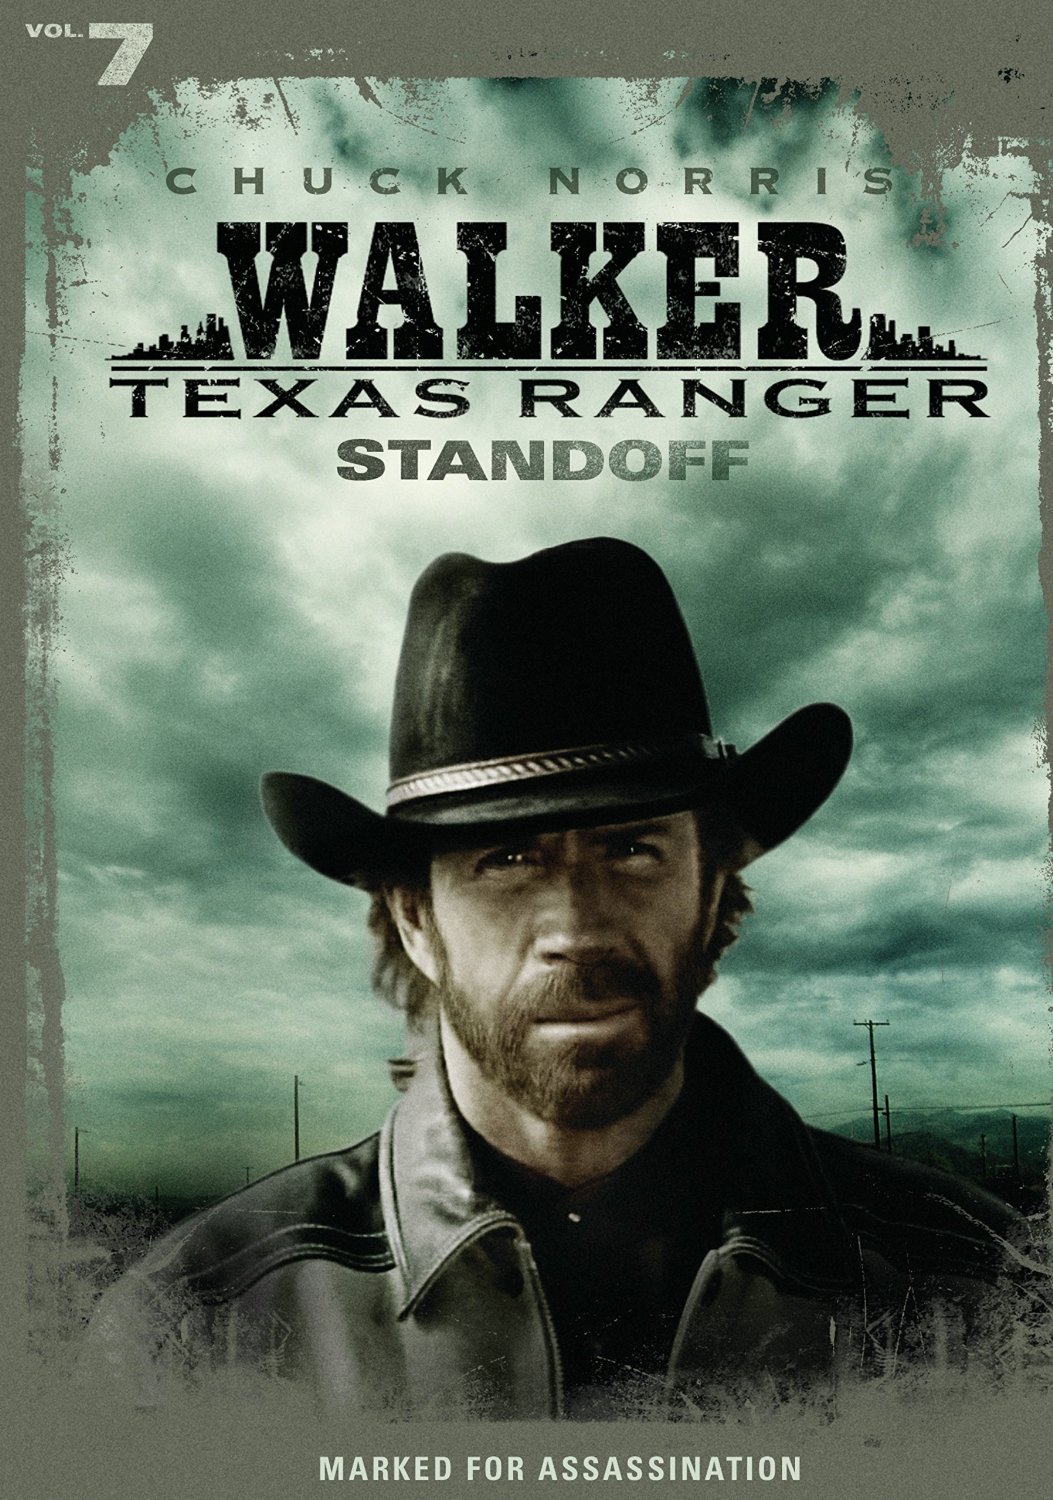 Texas Rangers [DVD] [2001] - Best Buy